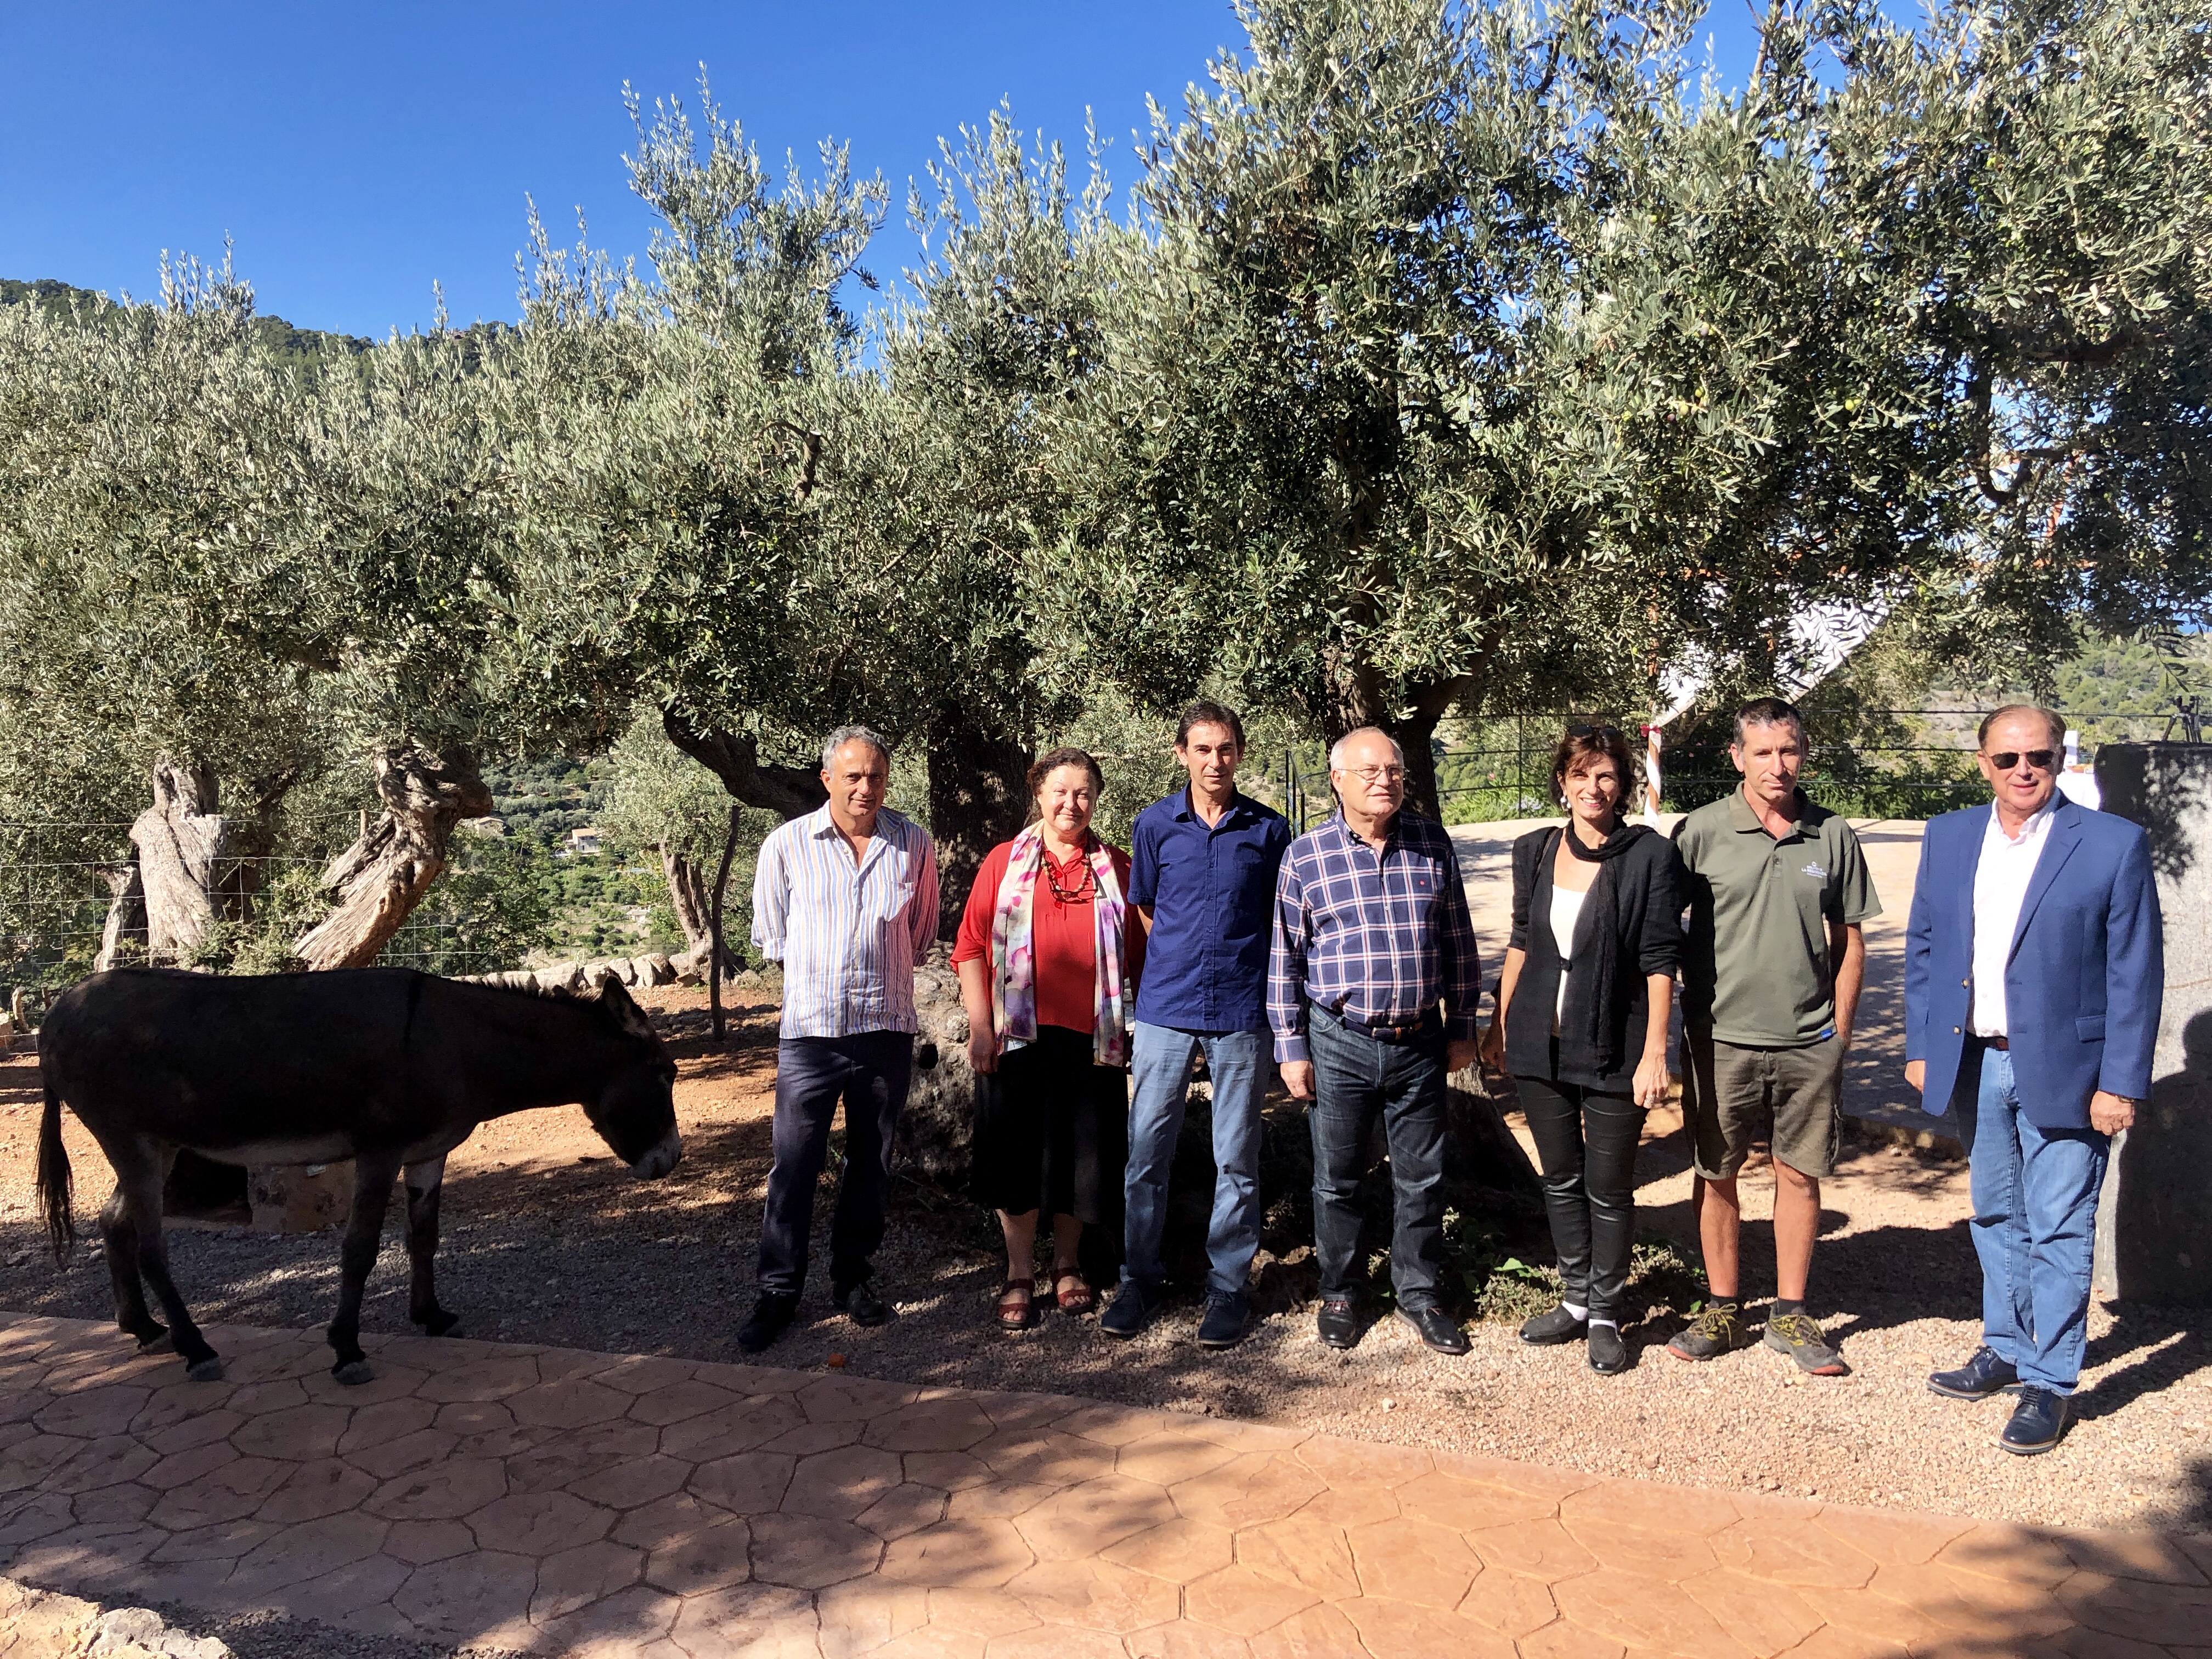 Presentació de l’inici de la campanya 2019 de la DOP Oliva de Mallorca - Notícies - Illes Balears - Productes agroalimentaris, denominacions d'origen i gastronomia balear